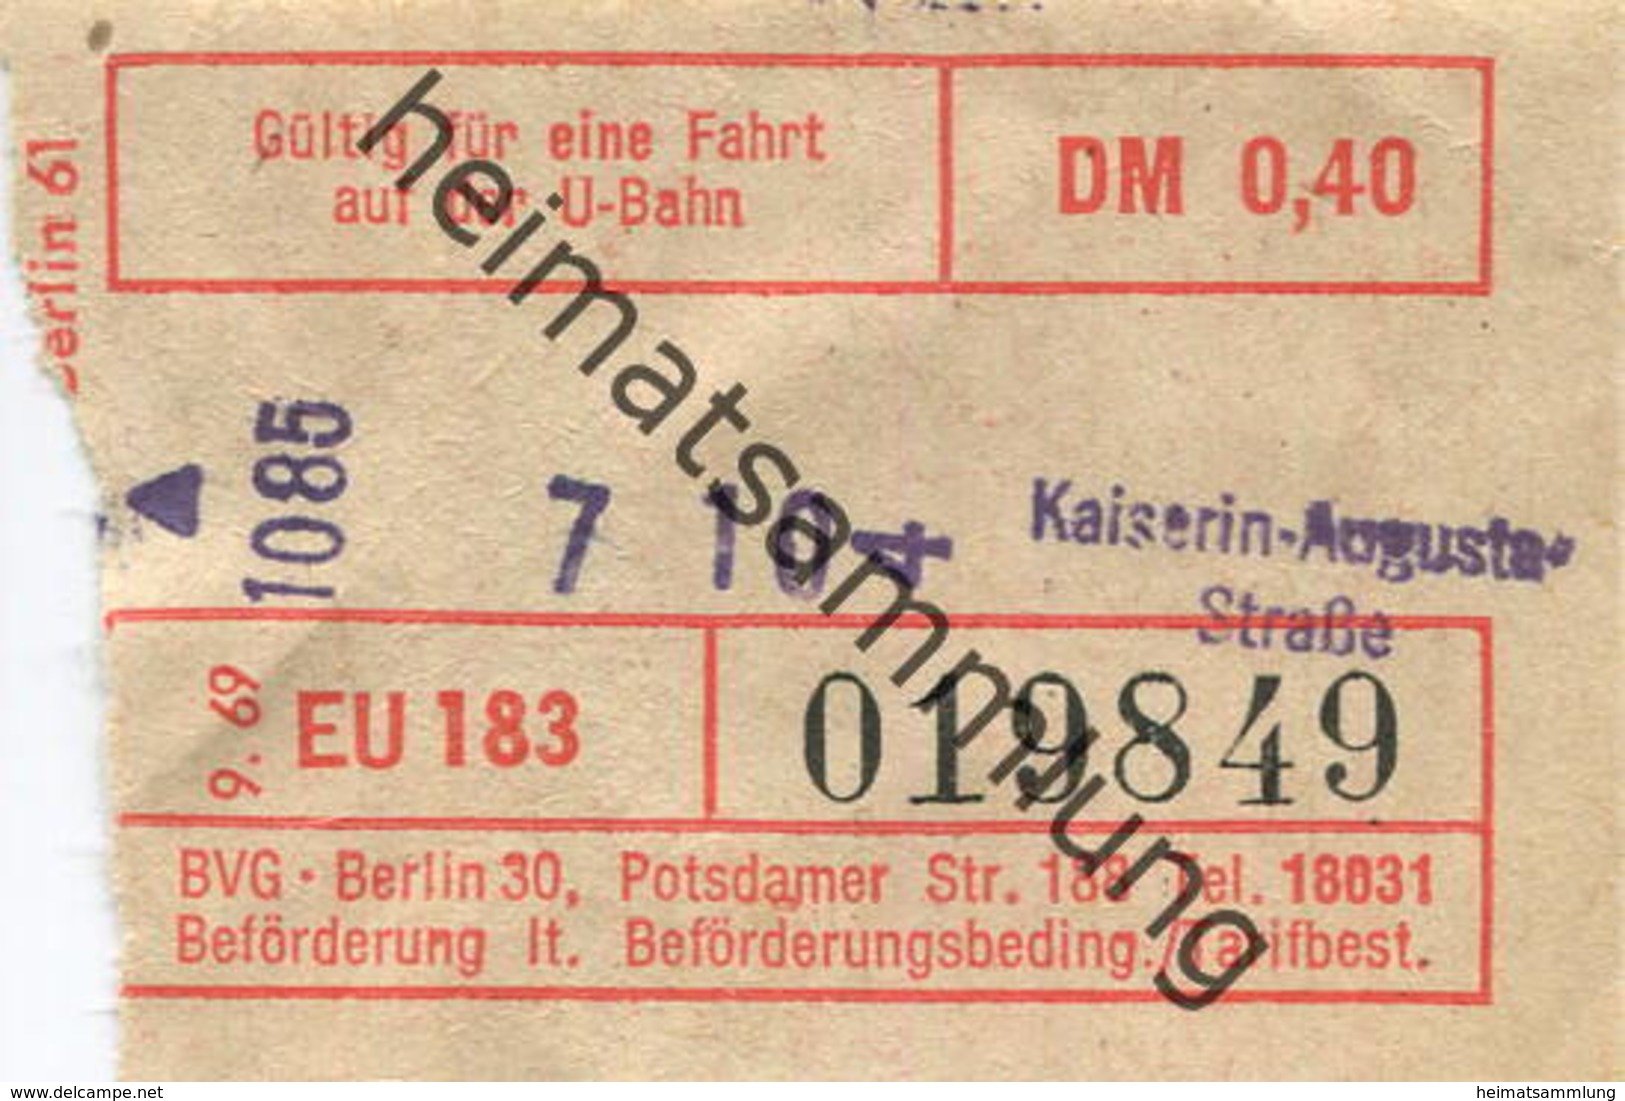 Deutschland - Berlin - U-Bahn Fahrschein BVG-Berlin 1971 - Kaiserin-Augusta-Strasse - Europa